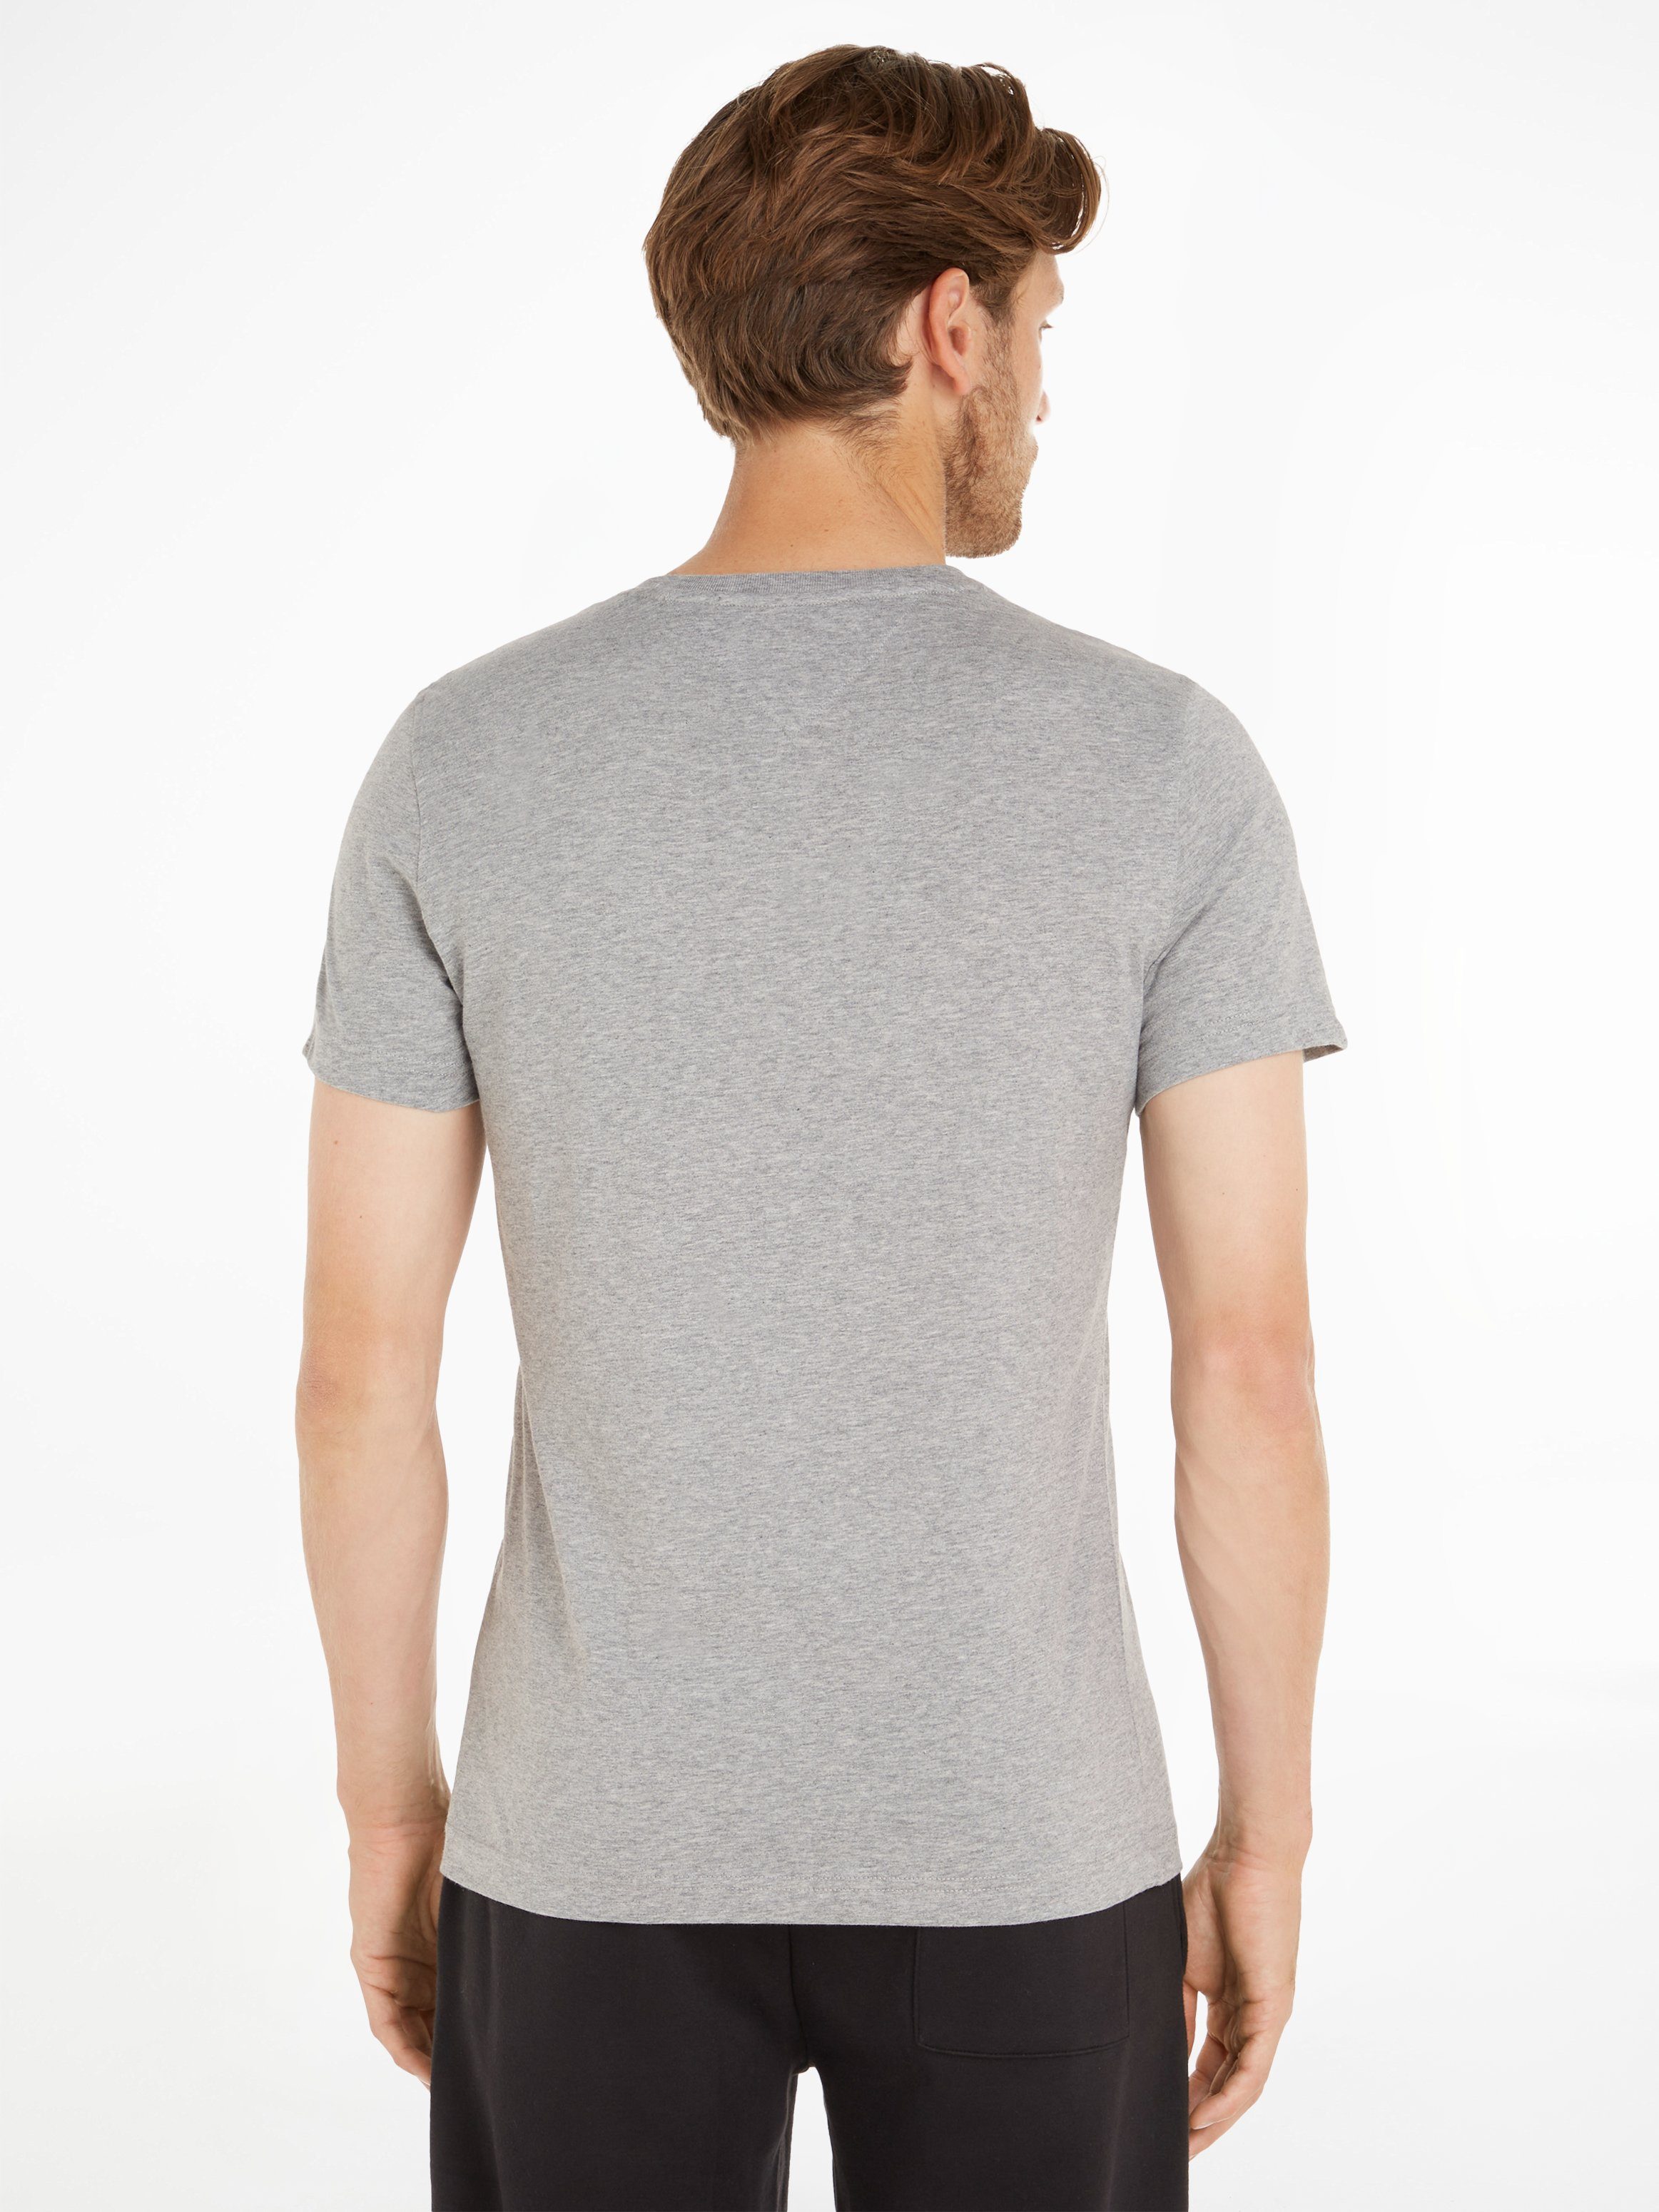 Tommy Jeans T-Shirt TJM ORIGINAL light und Logo-Flag mit heather NECK dezenter 038 grey TEE V-Ausschnitt JERSEY V